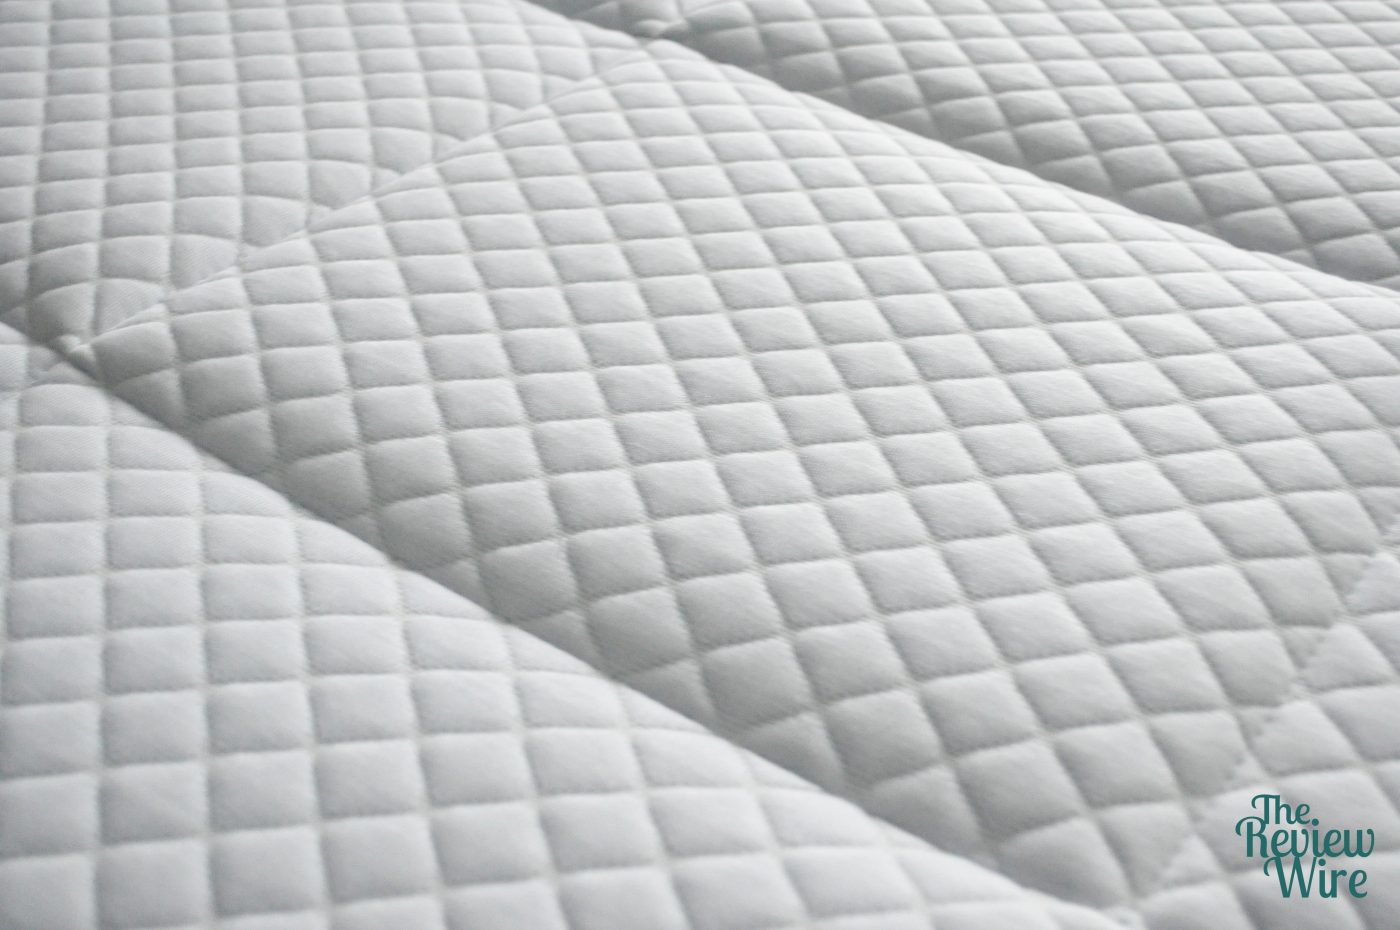 returning a nectar mattress review